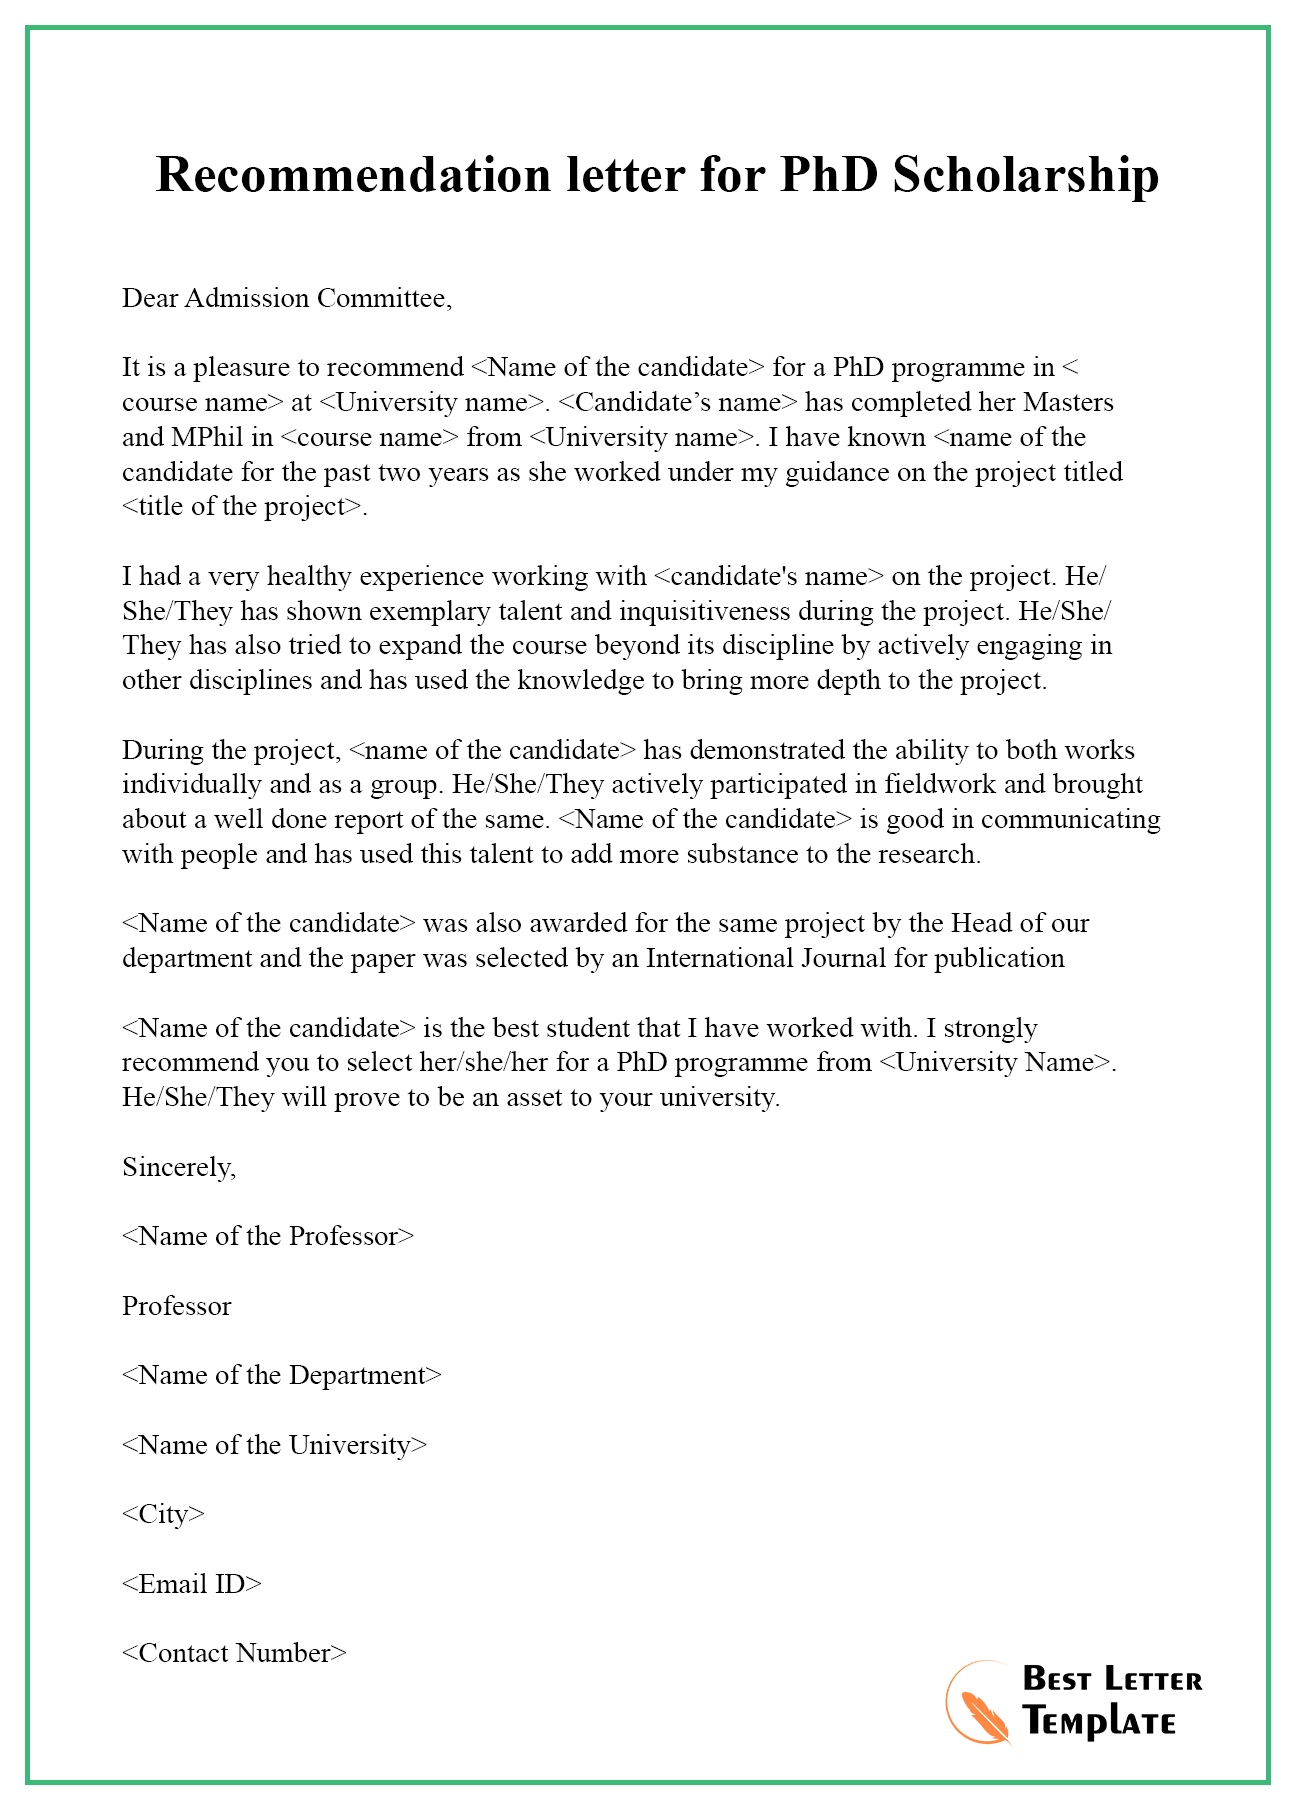 Sample Of Recommendation Letter For Scholarship from bestlettertemplate.com